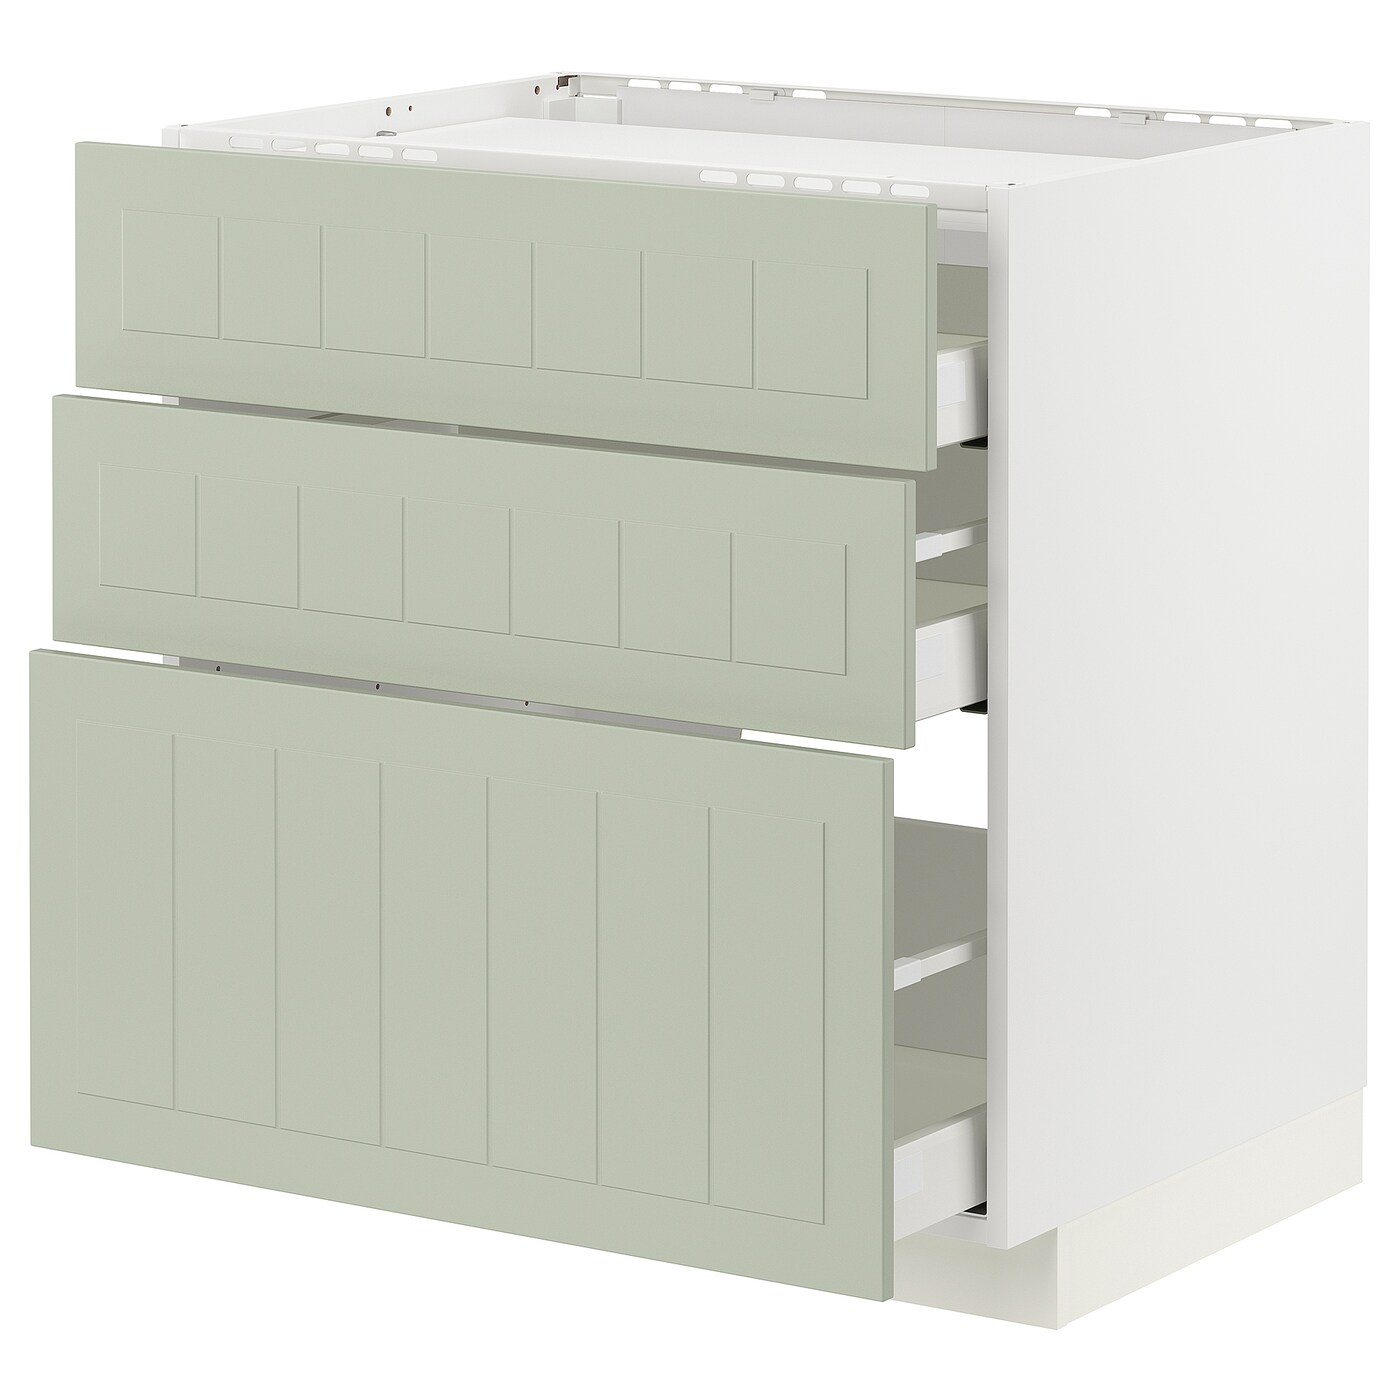 Напольный кухонный шкаф  - IKEA METOD MAXIMERA, 88x61,8x80см, белый/светло-серый, МЕТОД МАКСИМЕРА ИКЕА